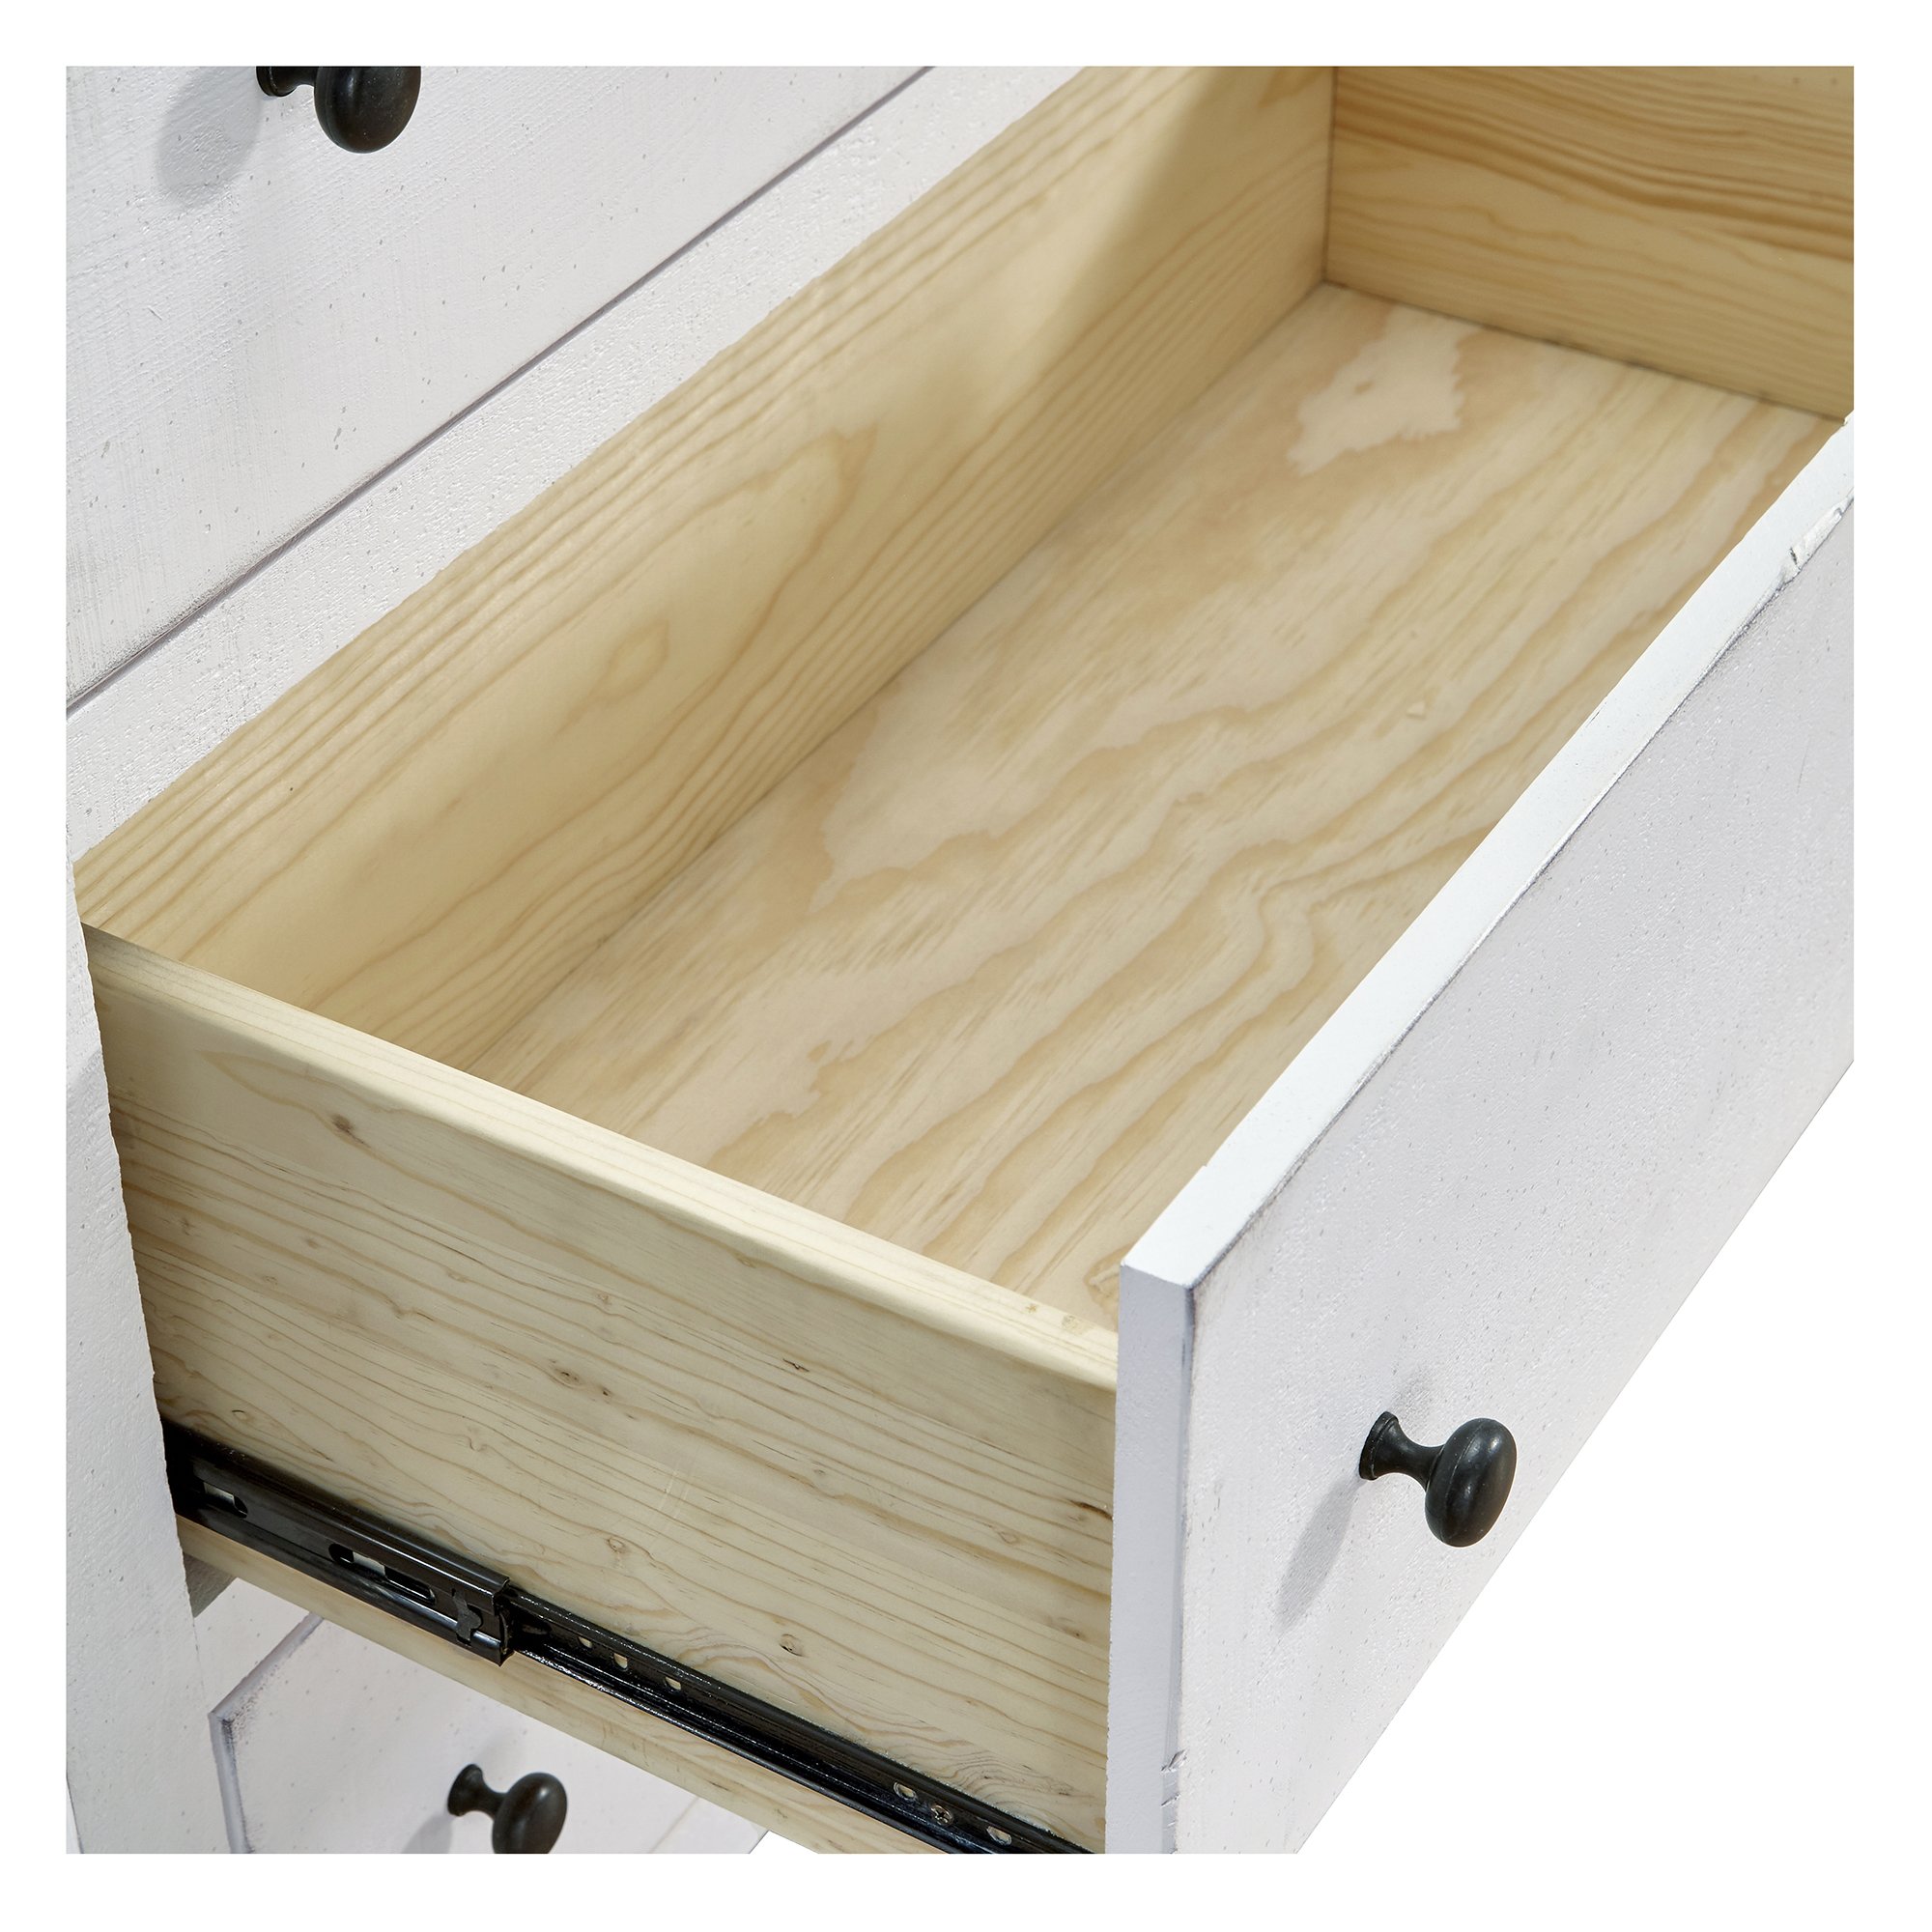 B617-14 drawer detail.jpg